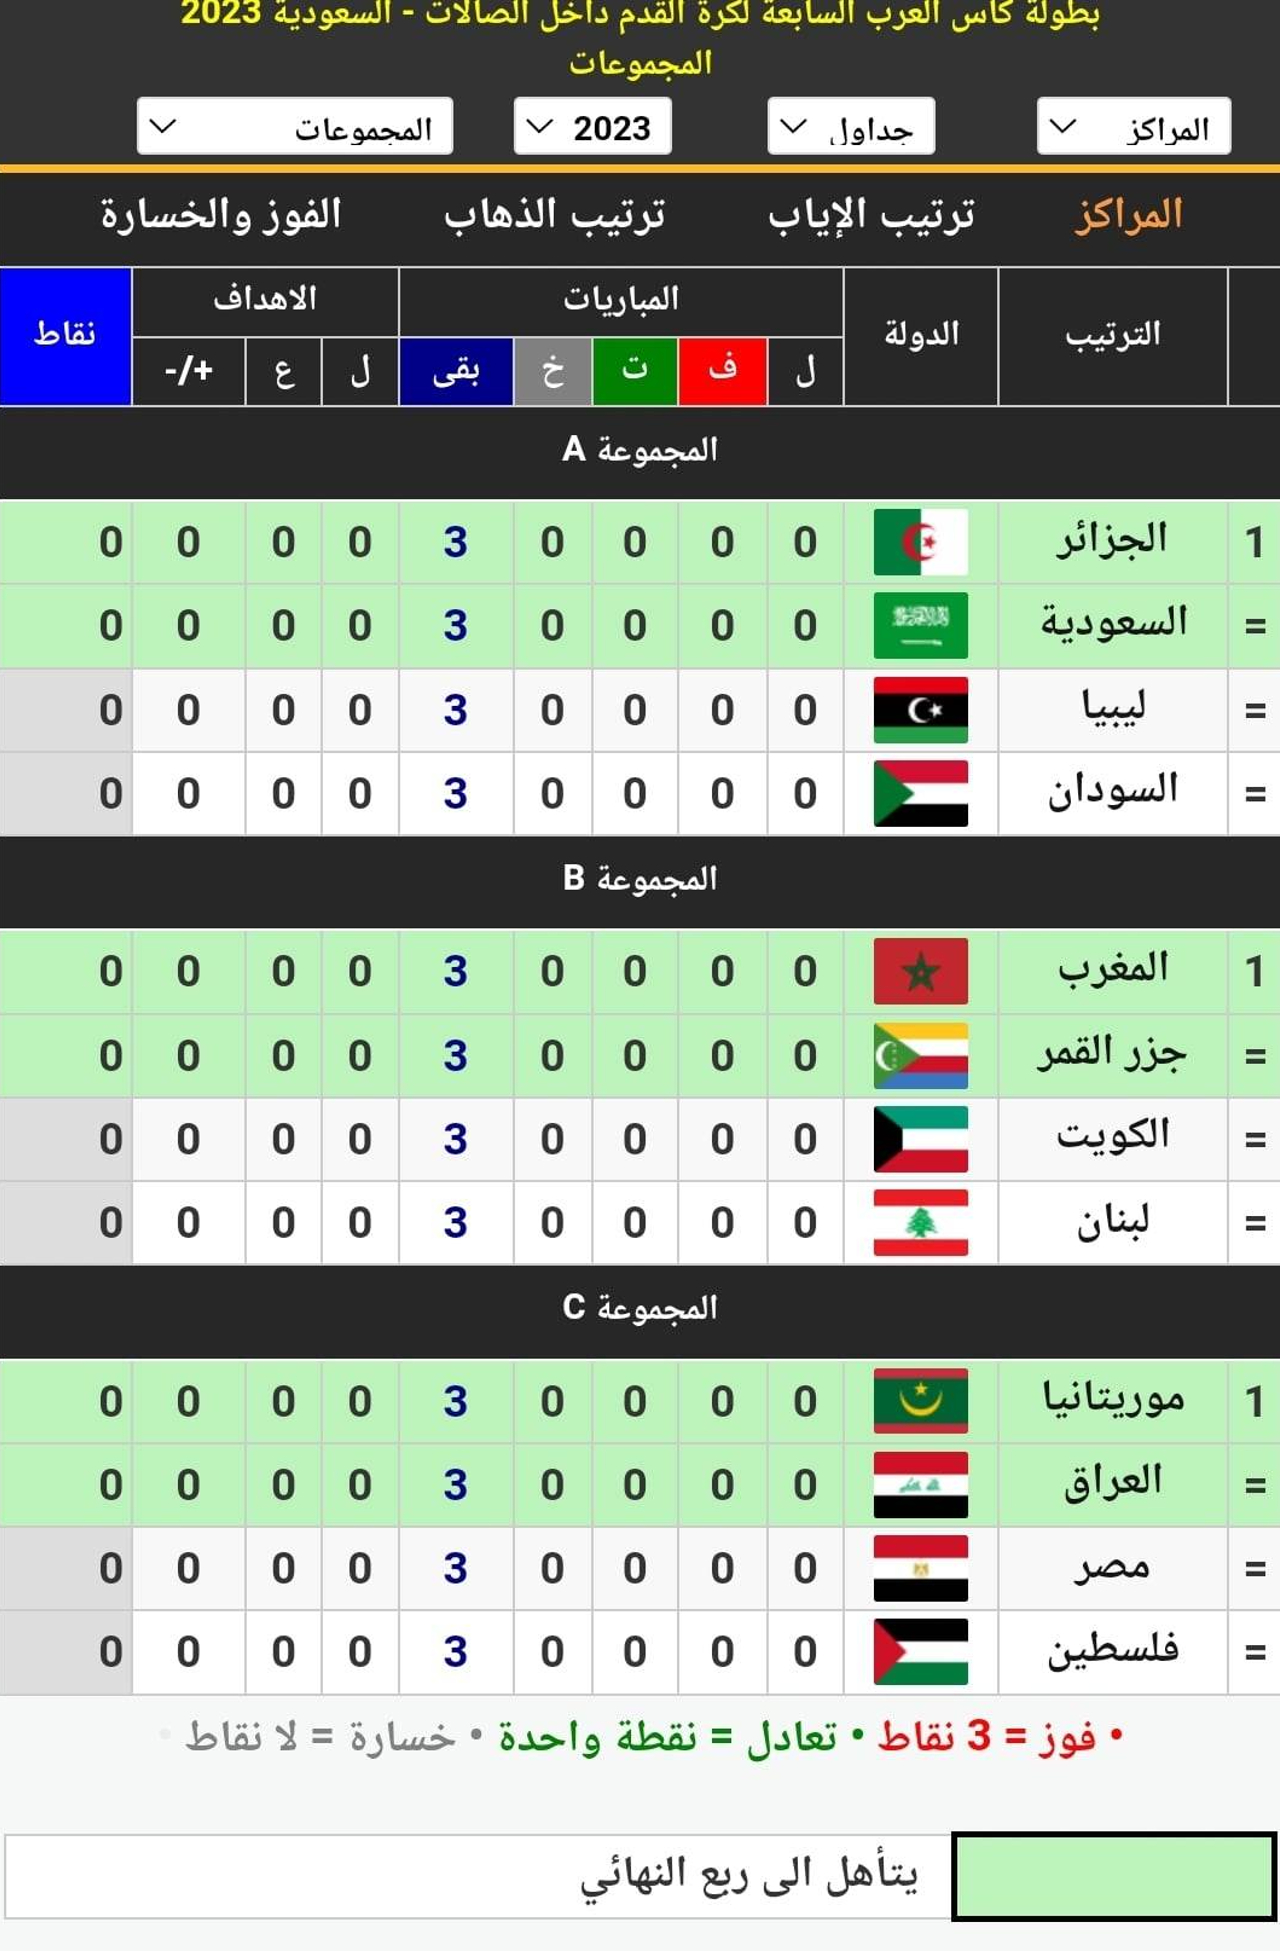 مجموعات كأس العرب السابعة لكرة القدم داخل الصالات السعودية 2023 قبل مباراة السعودية والجزائر في الافتتاح